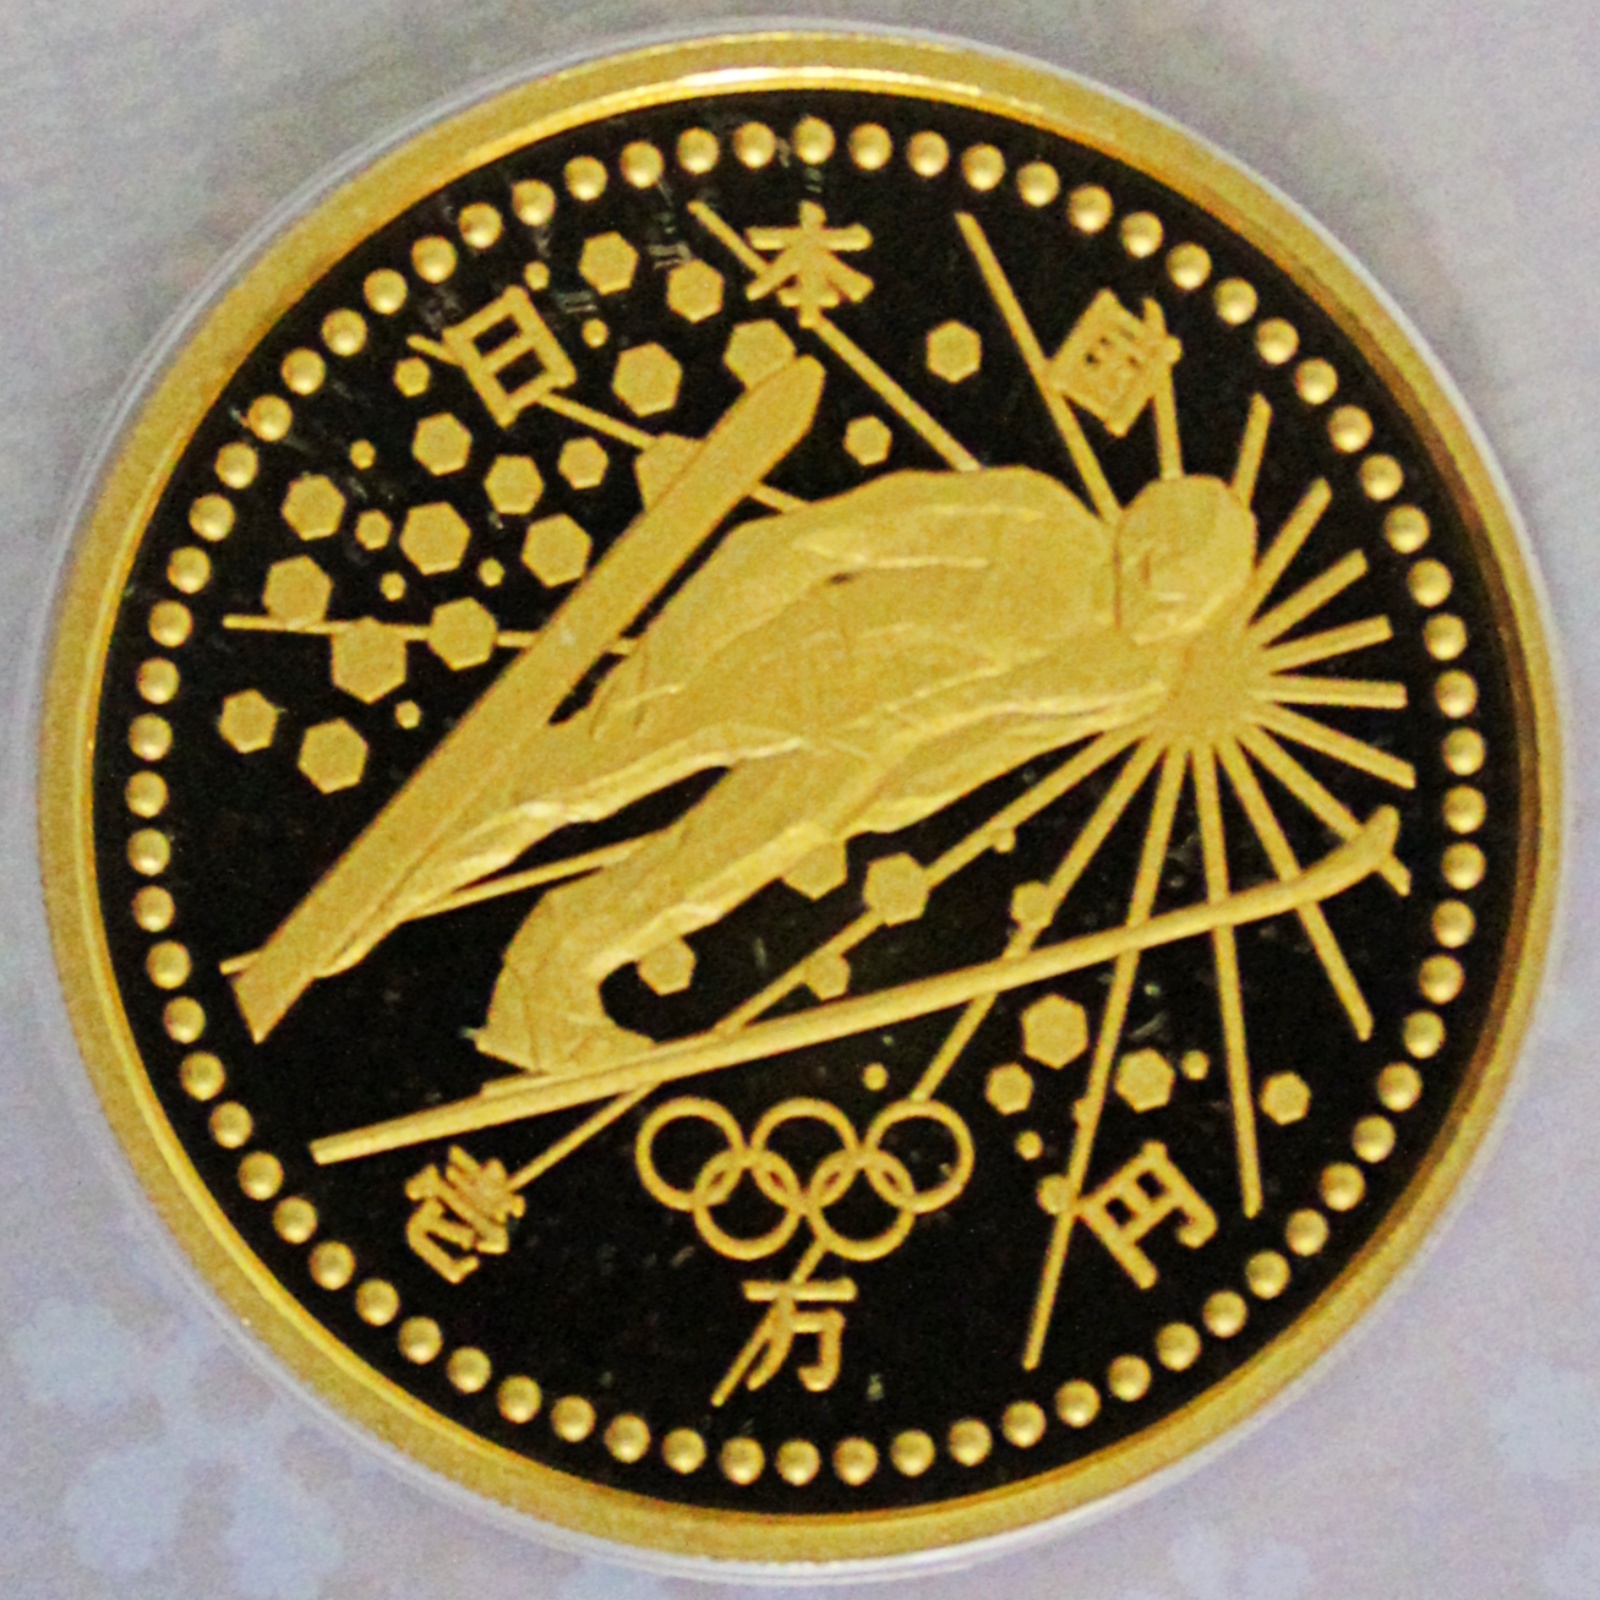 長野オリンピック冬季競技大会記念貨幣 平成9年銘3種プルーフセット 